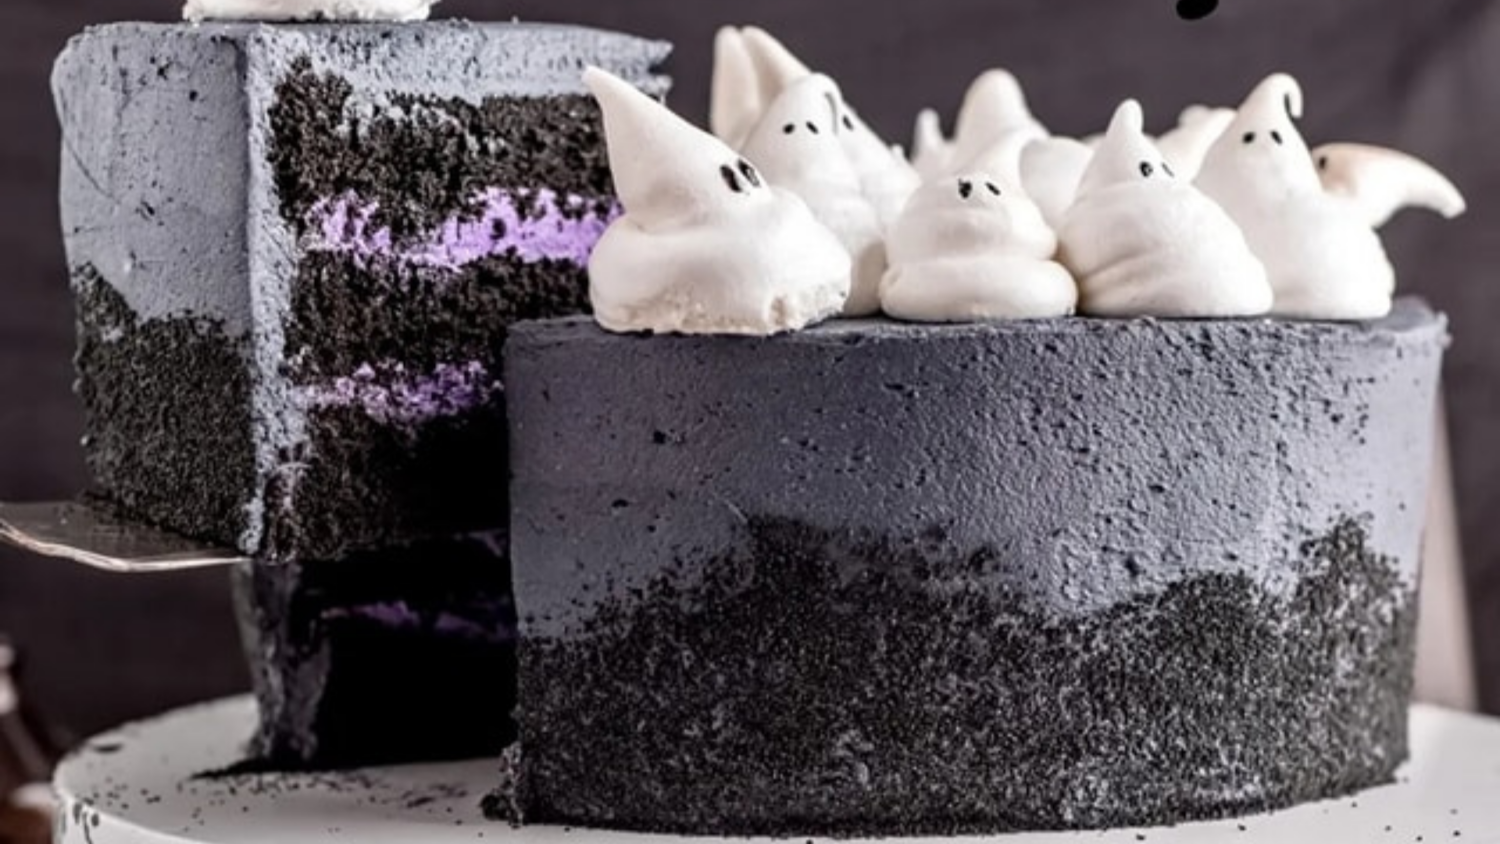 Black Halloween cake with cute meringue ghosts on top